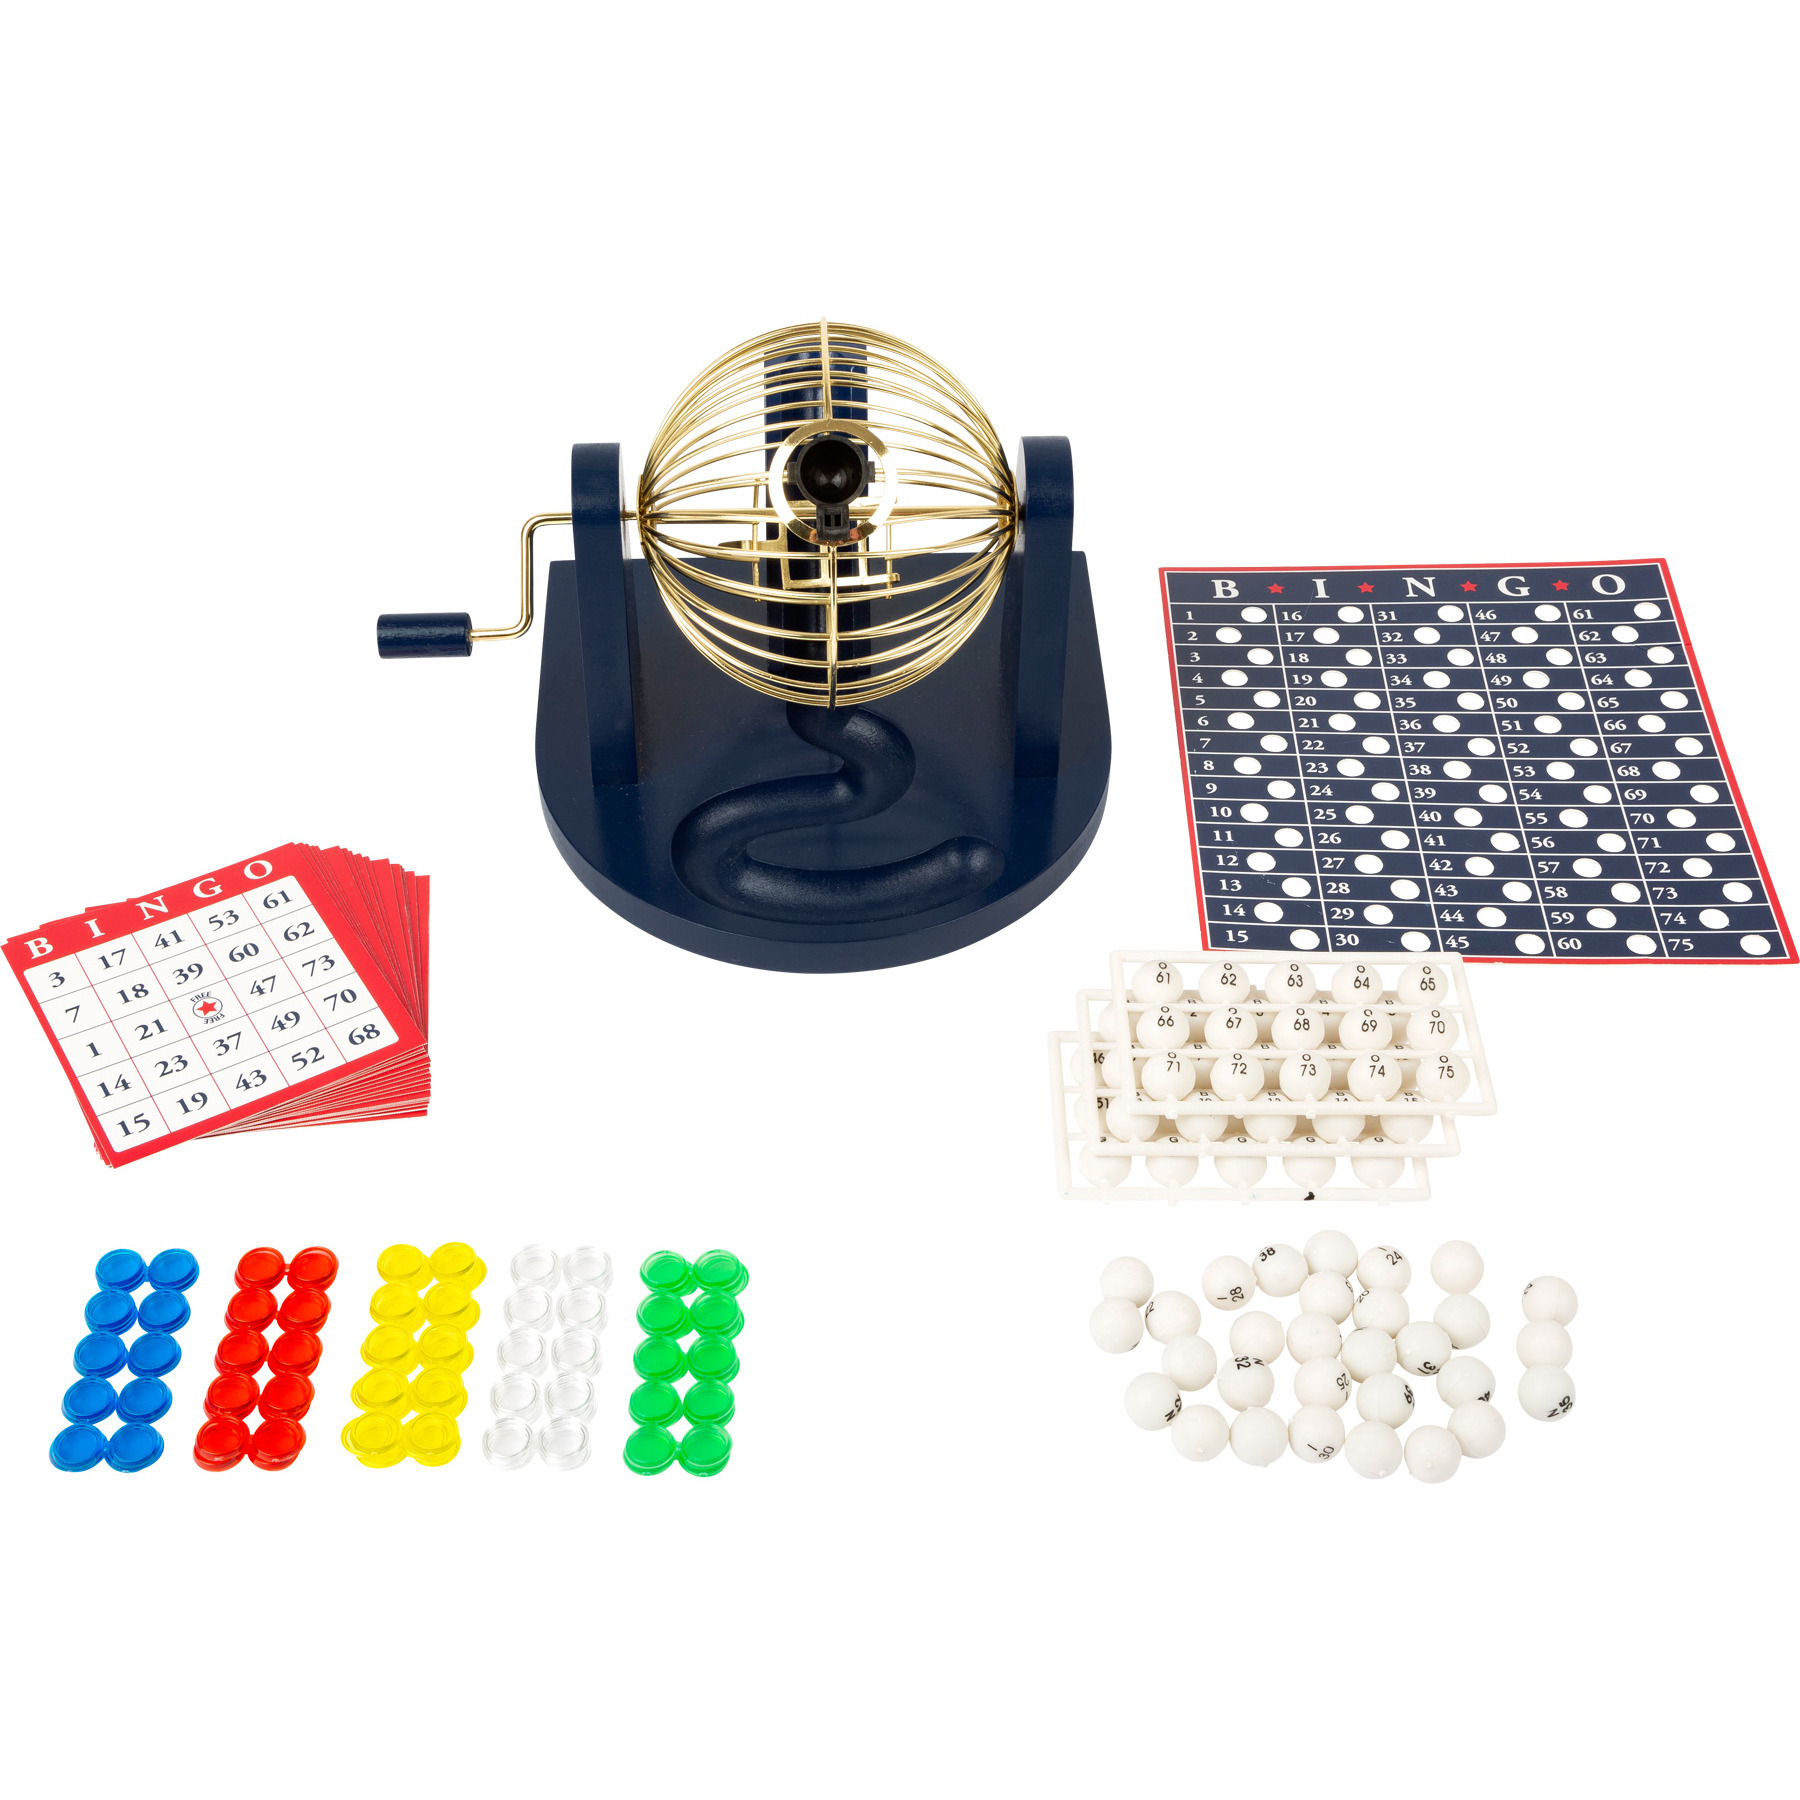 Bingospel blauw-goud-wit 1-75 met bingomolen, 167 bingokaarten en 2 bingostiften